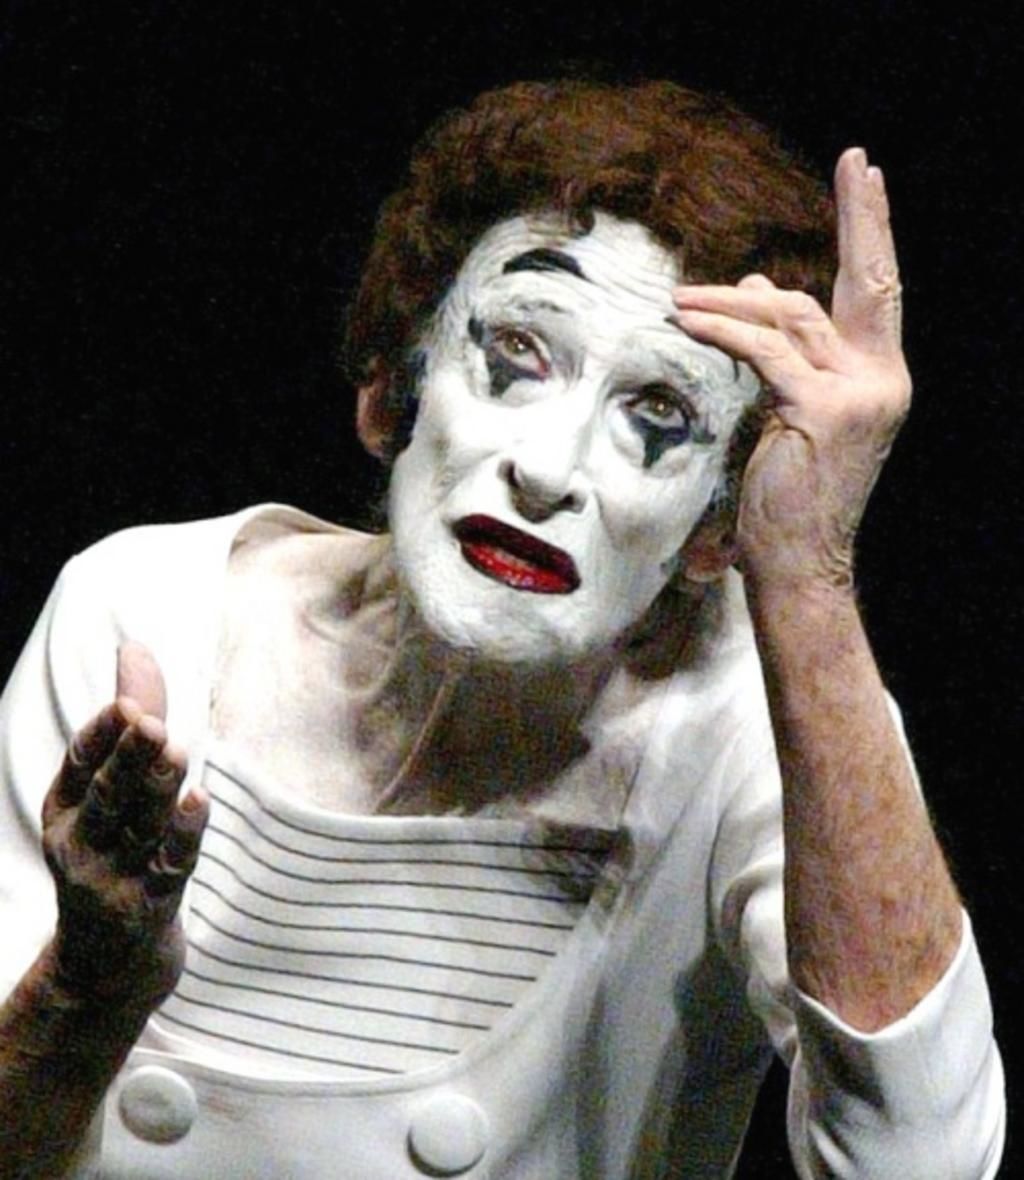 1923: Nace Marcel Marceau, una leyenda en el arte de la pantomima